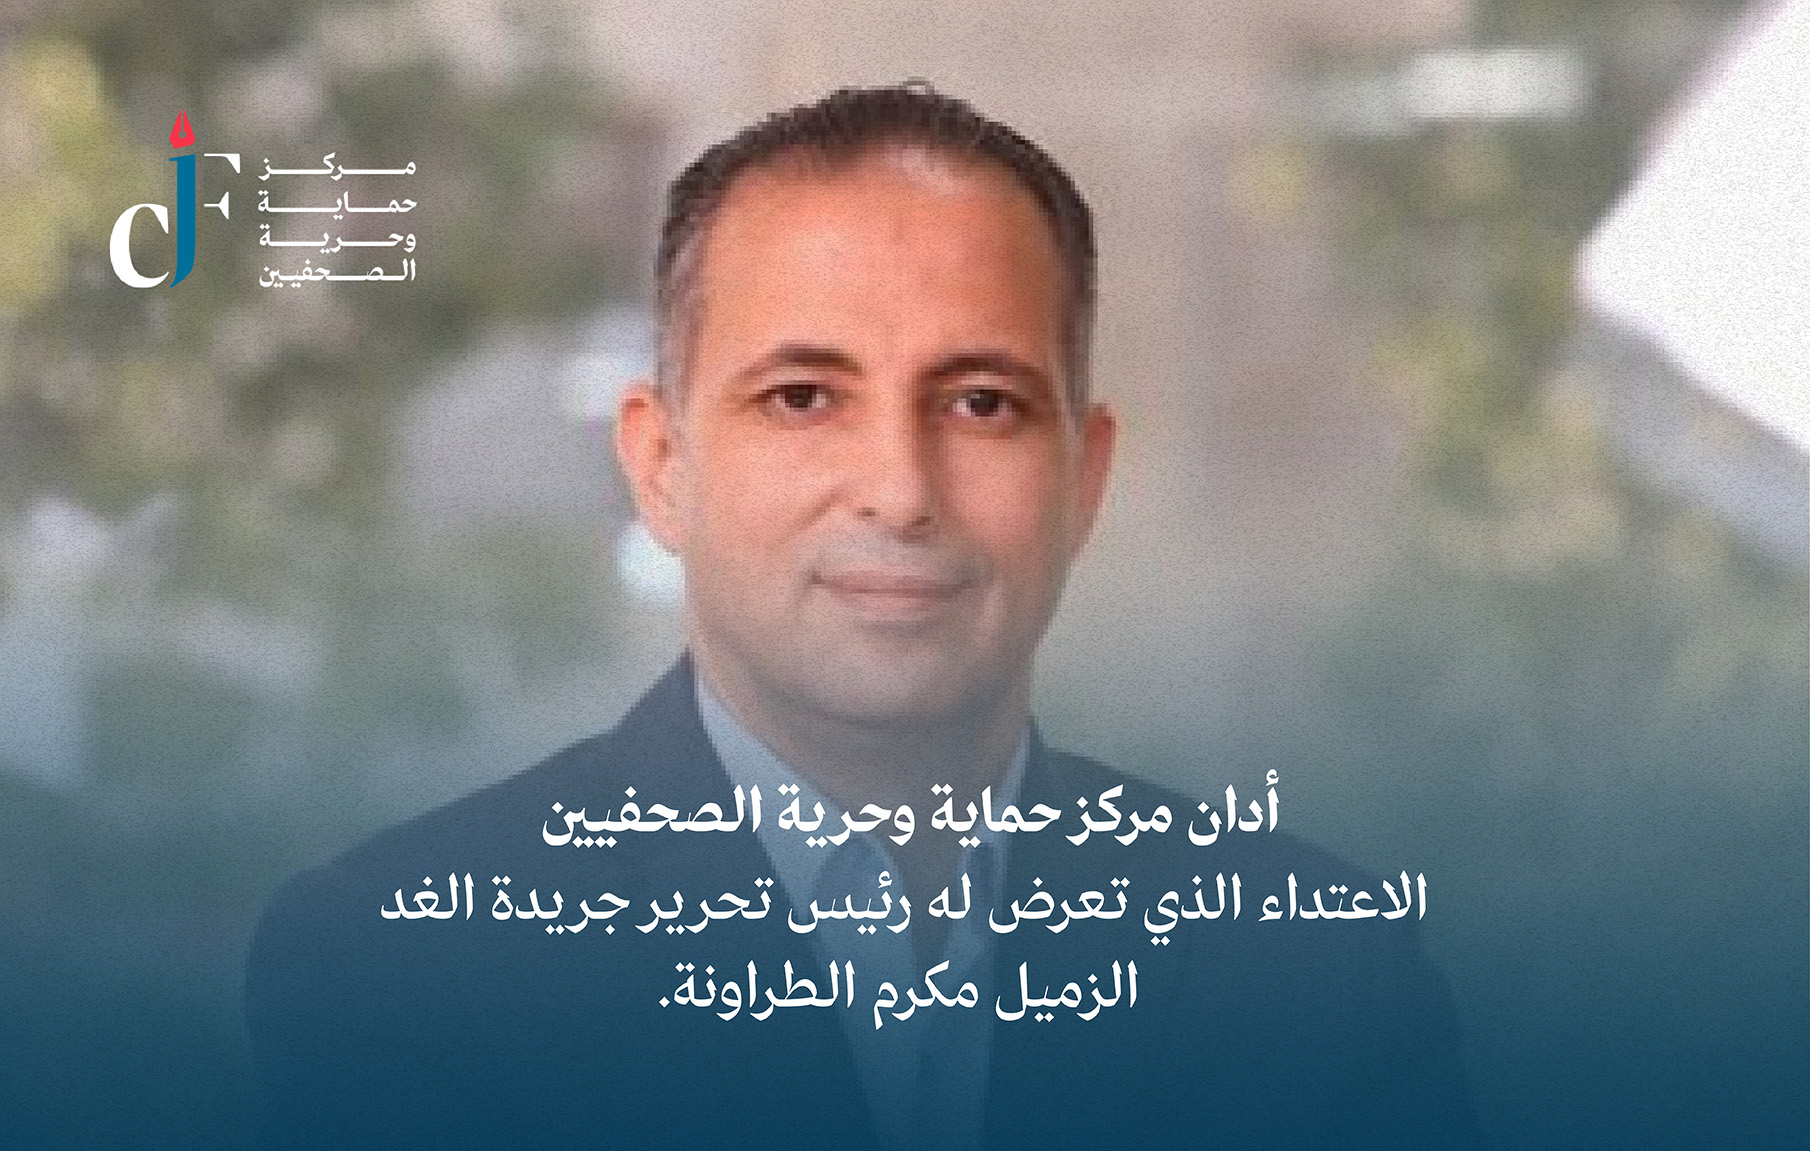 أدان مركز حماية وحرية الصحفيين الاعتداء الذي تعرض له رئيس تحرير جريدة الغد الزميل مكرم الطراونة.